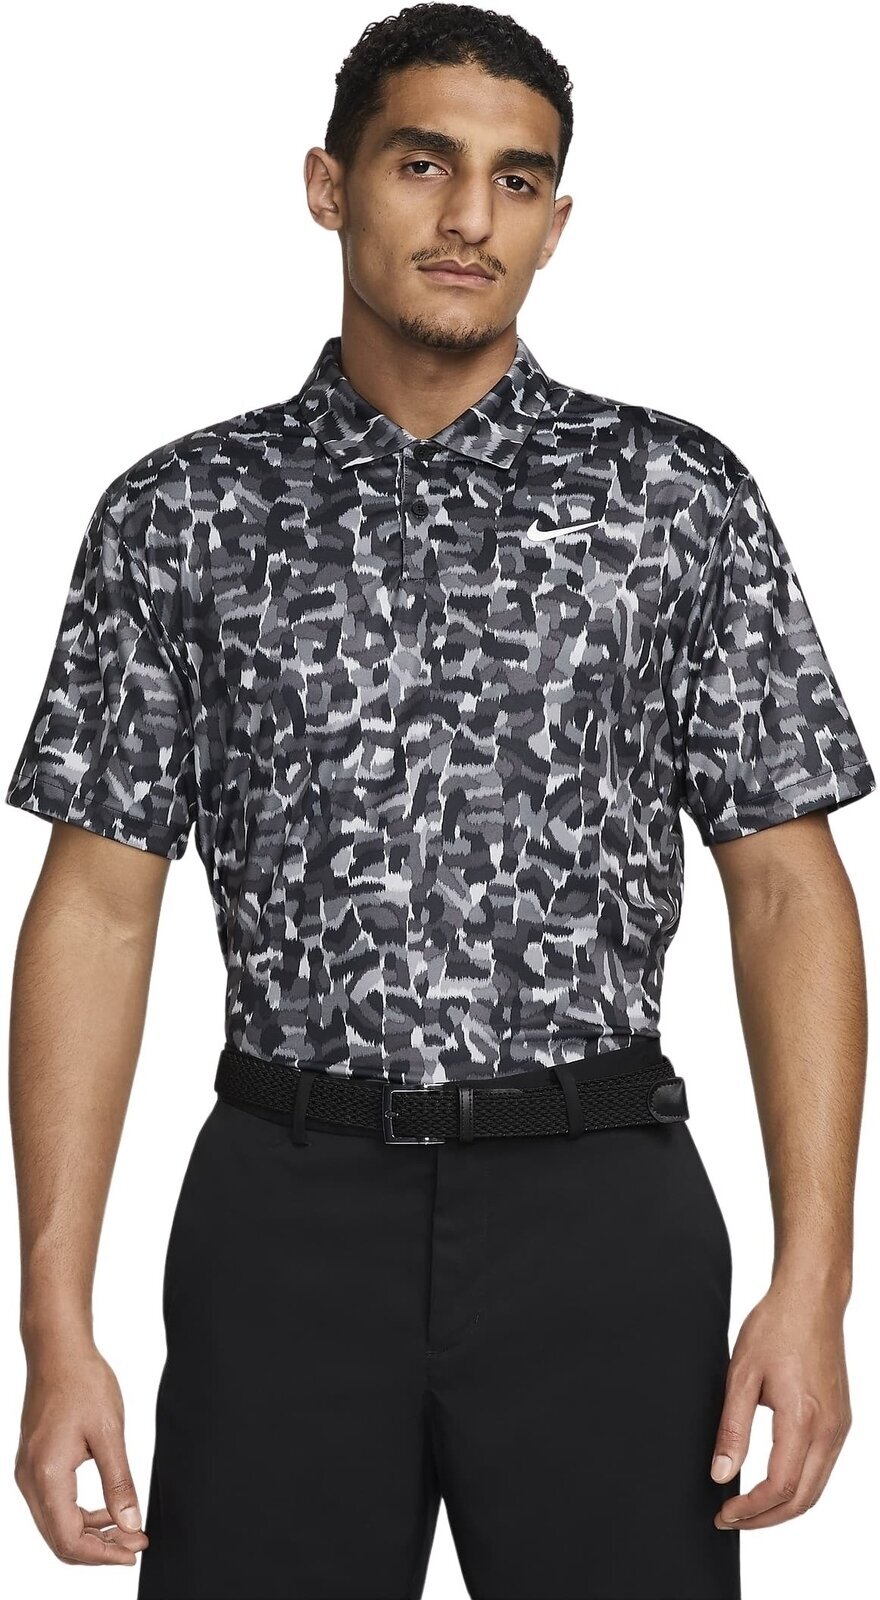 Polo-Shirt Nike Dri-Fit Tour Confetti Print Mens Polo Light Smoke Grey/White L